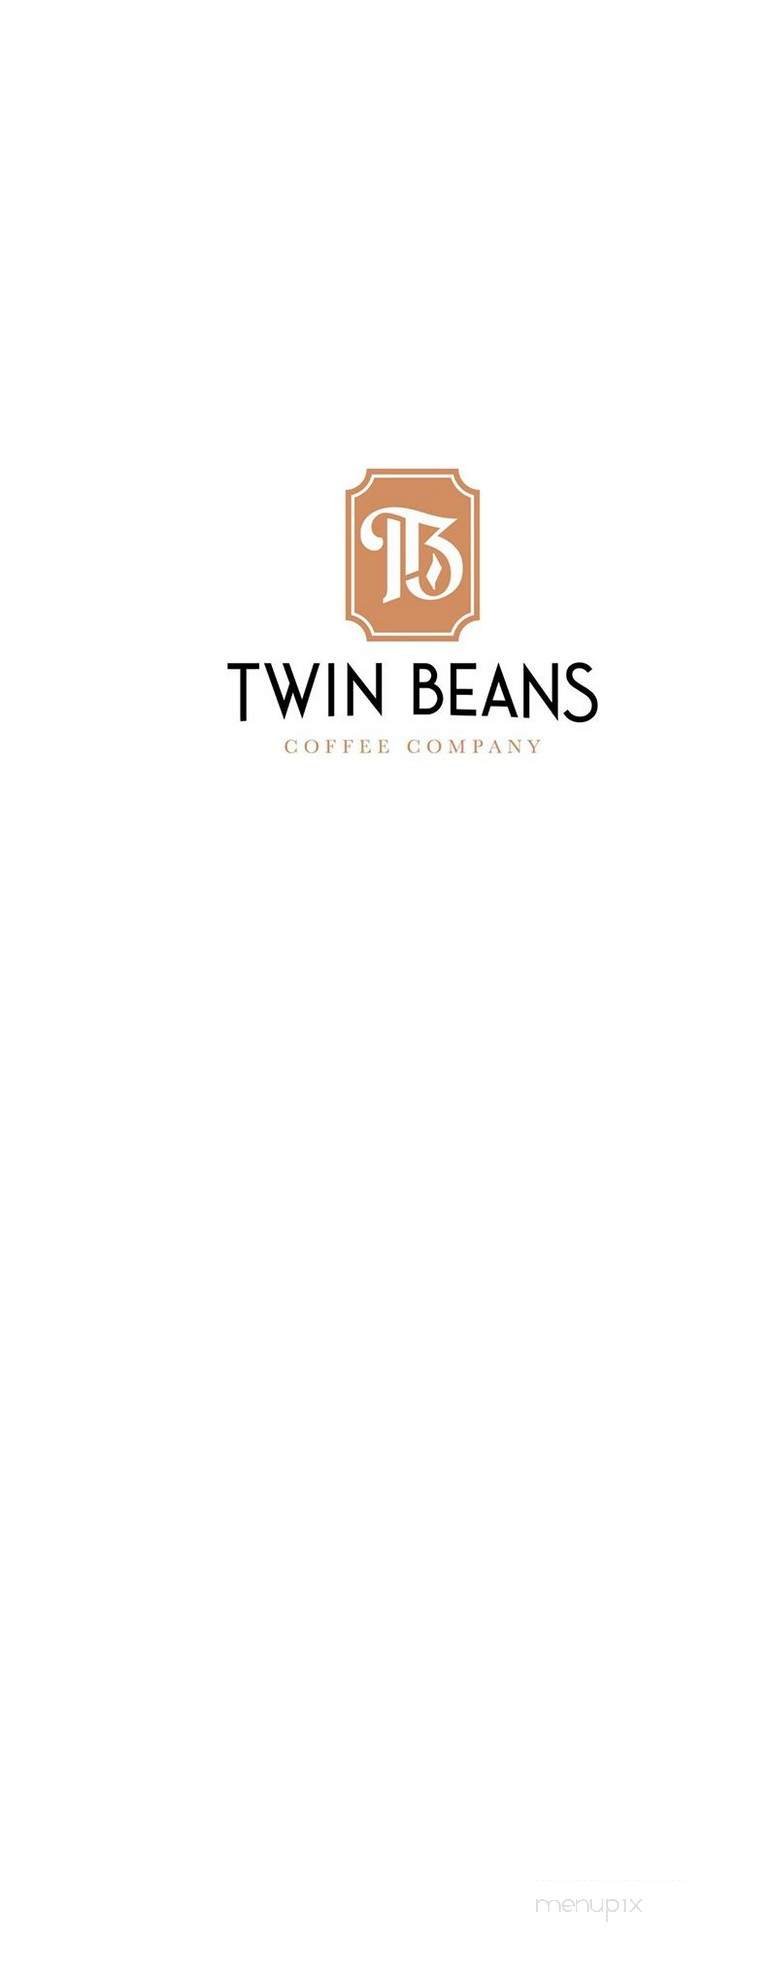 Twin Beans Coffee Company - Twin Falls, ID